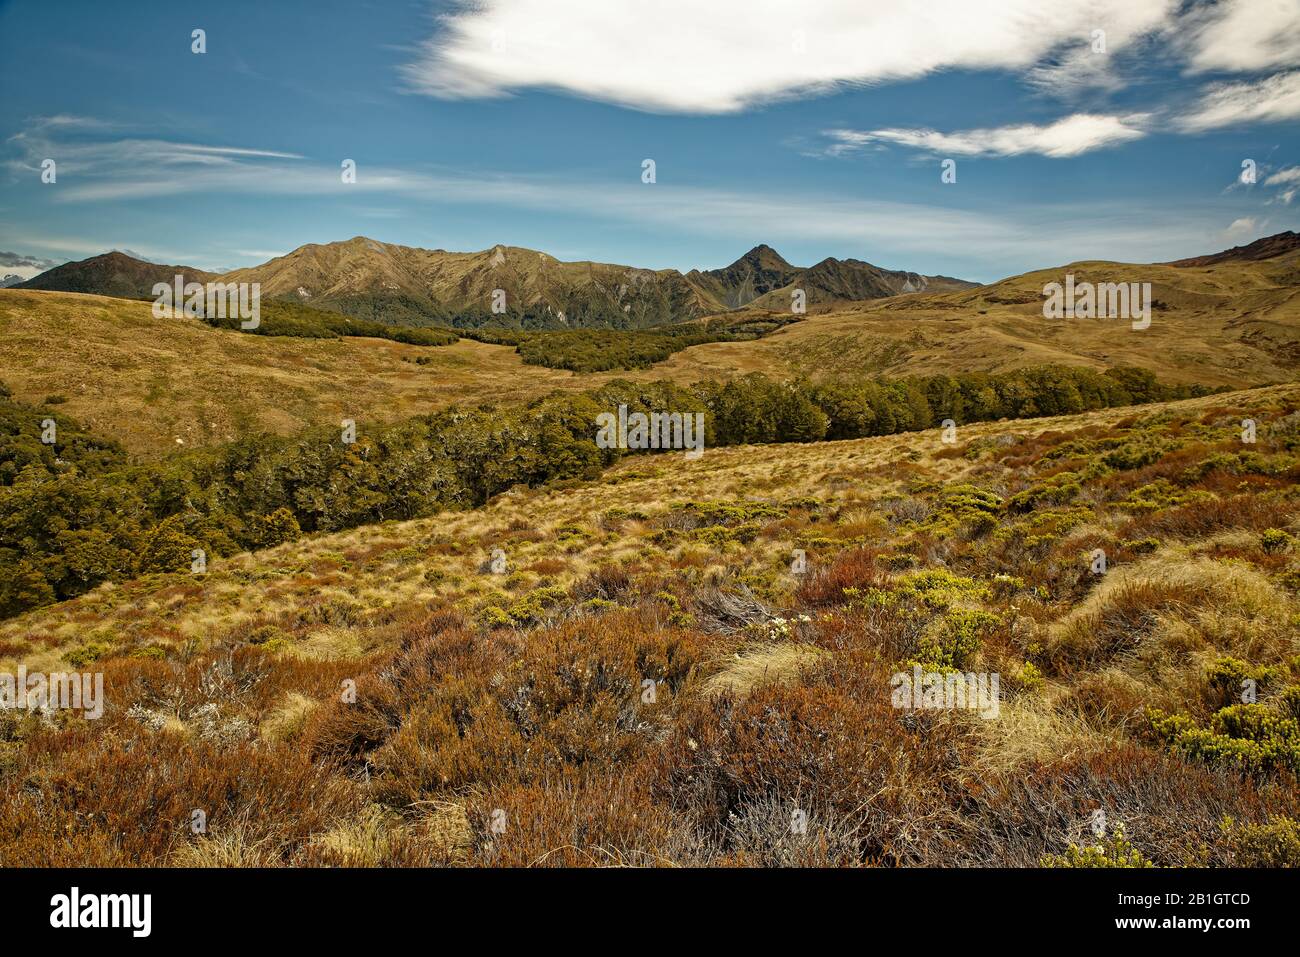 Nouvelle-zélande paysage - Parc National de Fiordland, île du sud, vue magnifique sur la montagne et des paysages du fjord. Banque D'Images